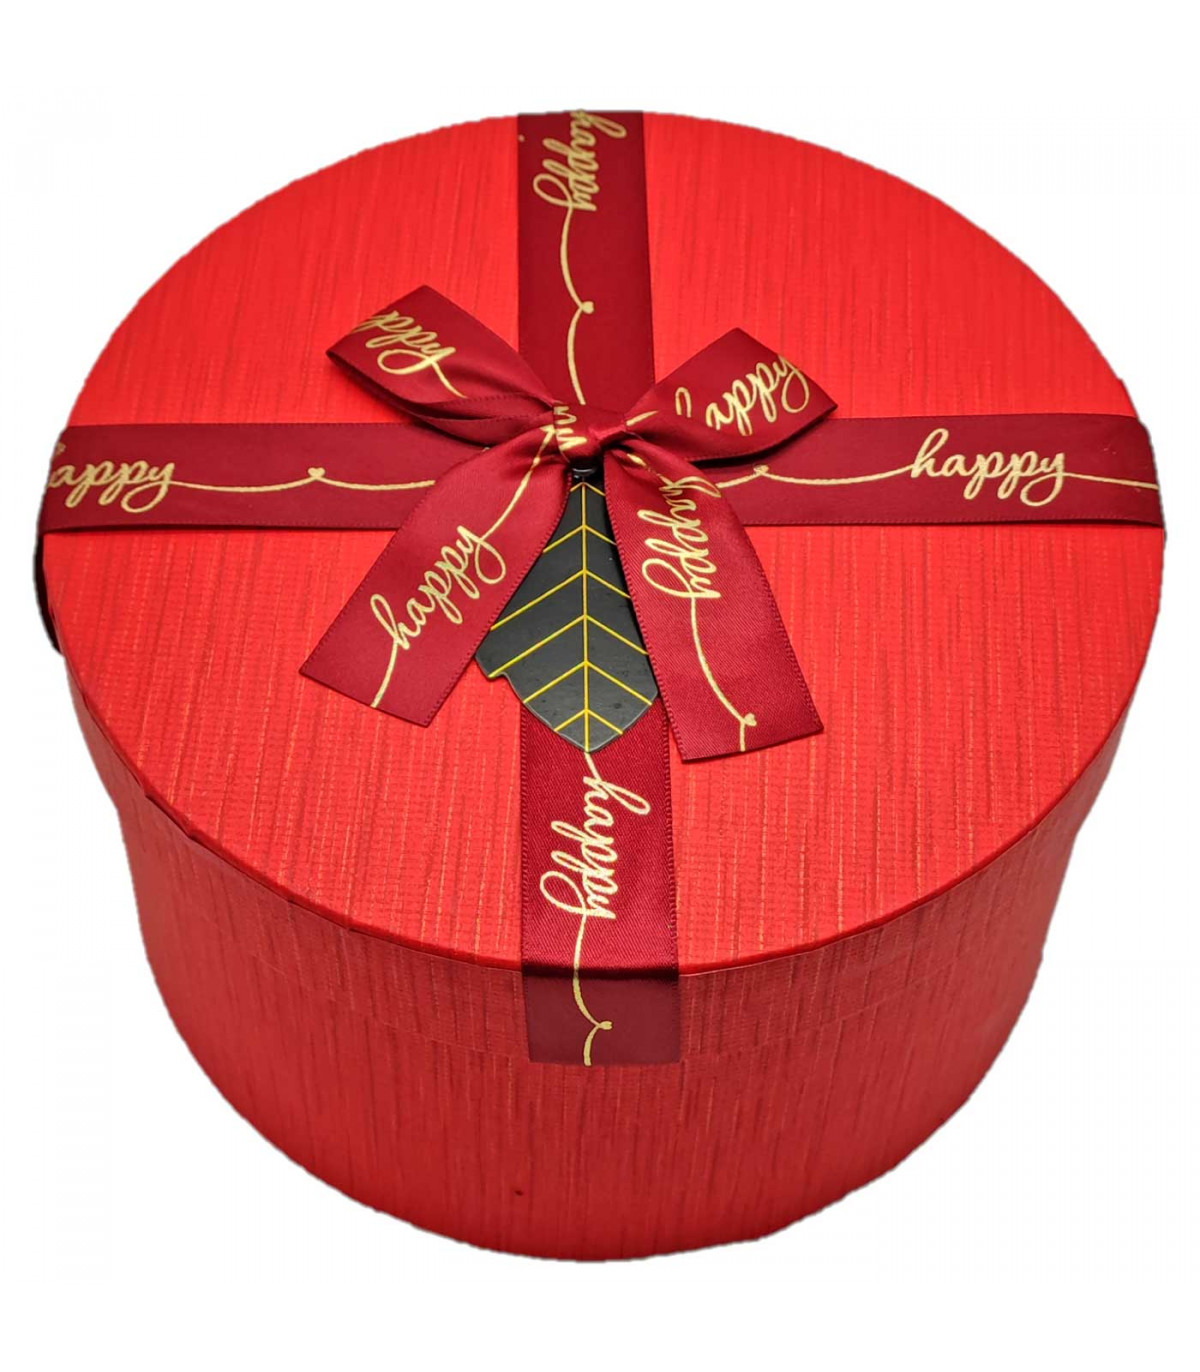 5 ideas para decorar una Caja de cartón para Navidad - Crear Para Regalar